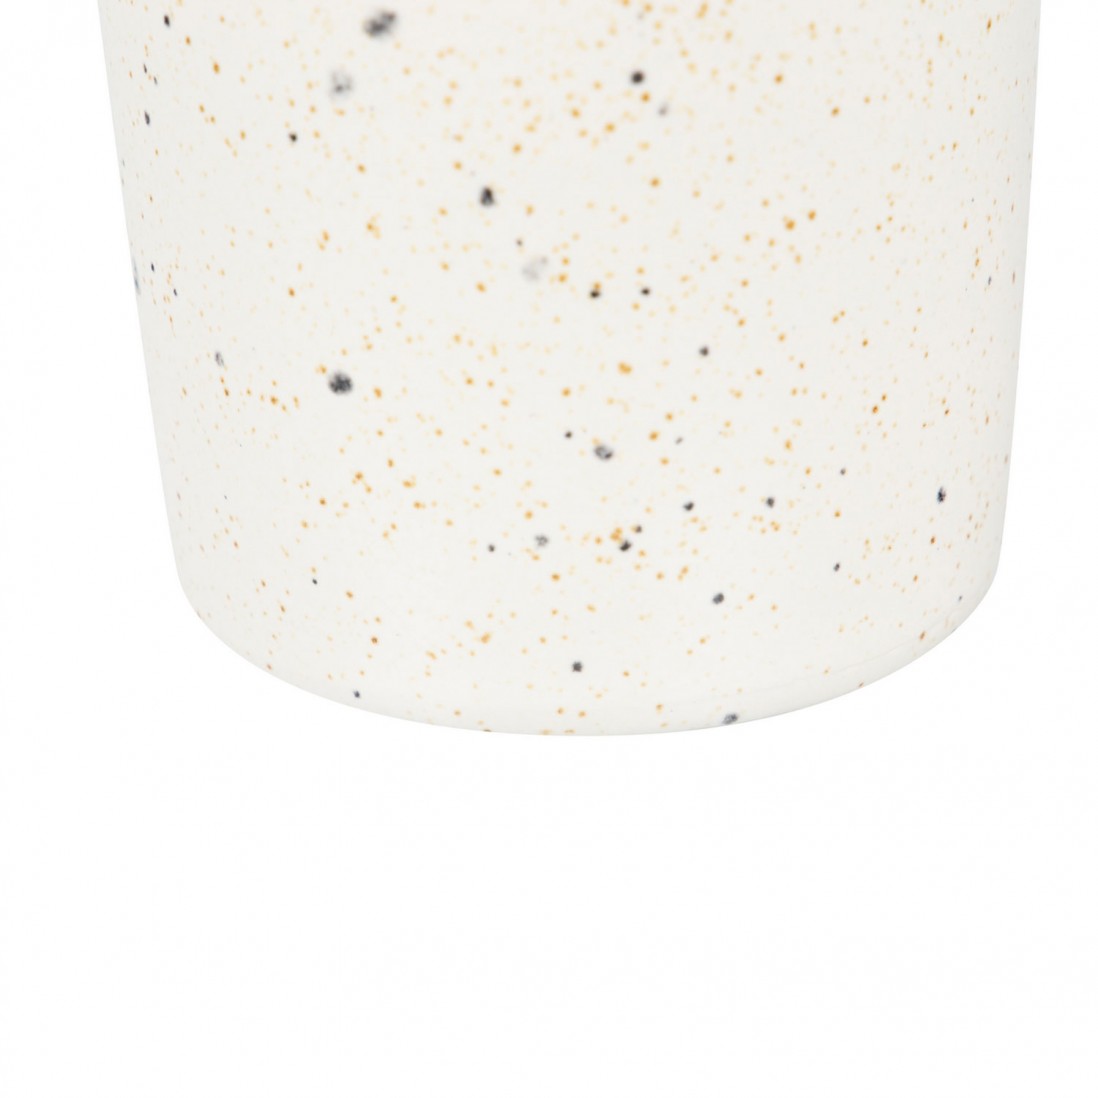 Ceramic Vase 610